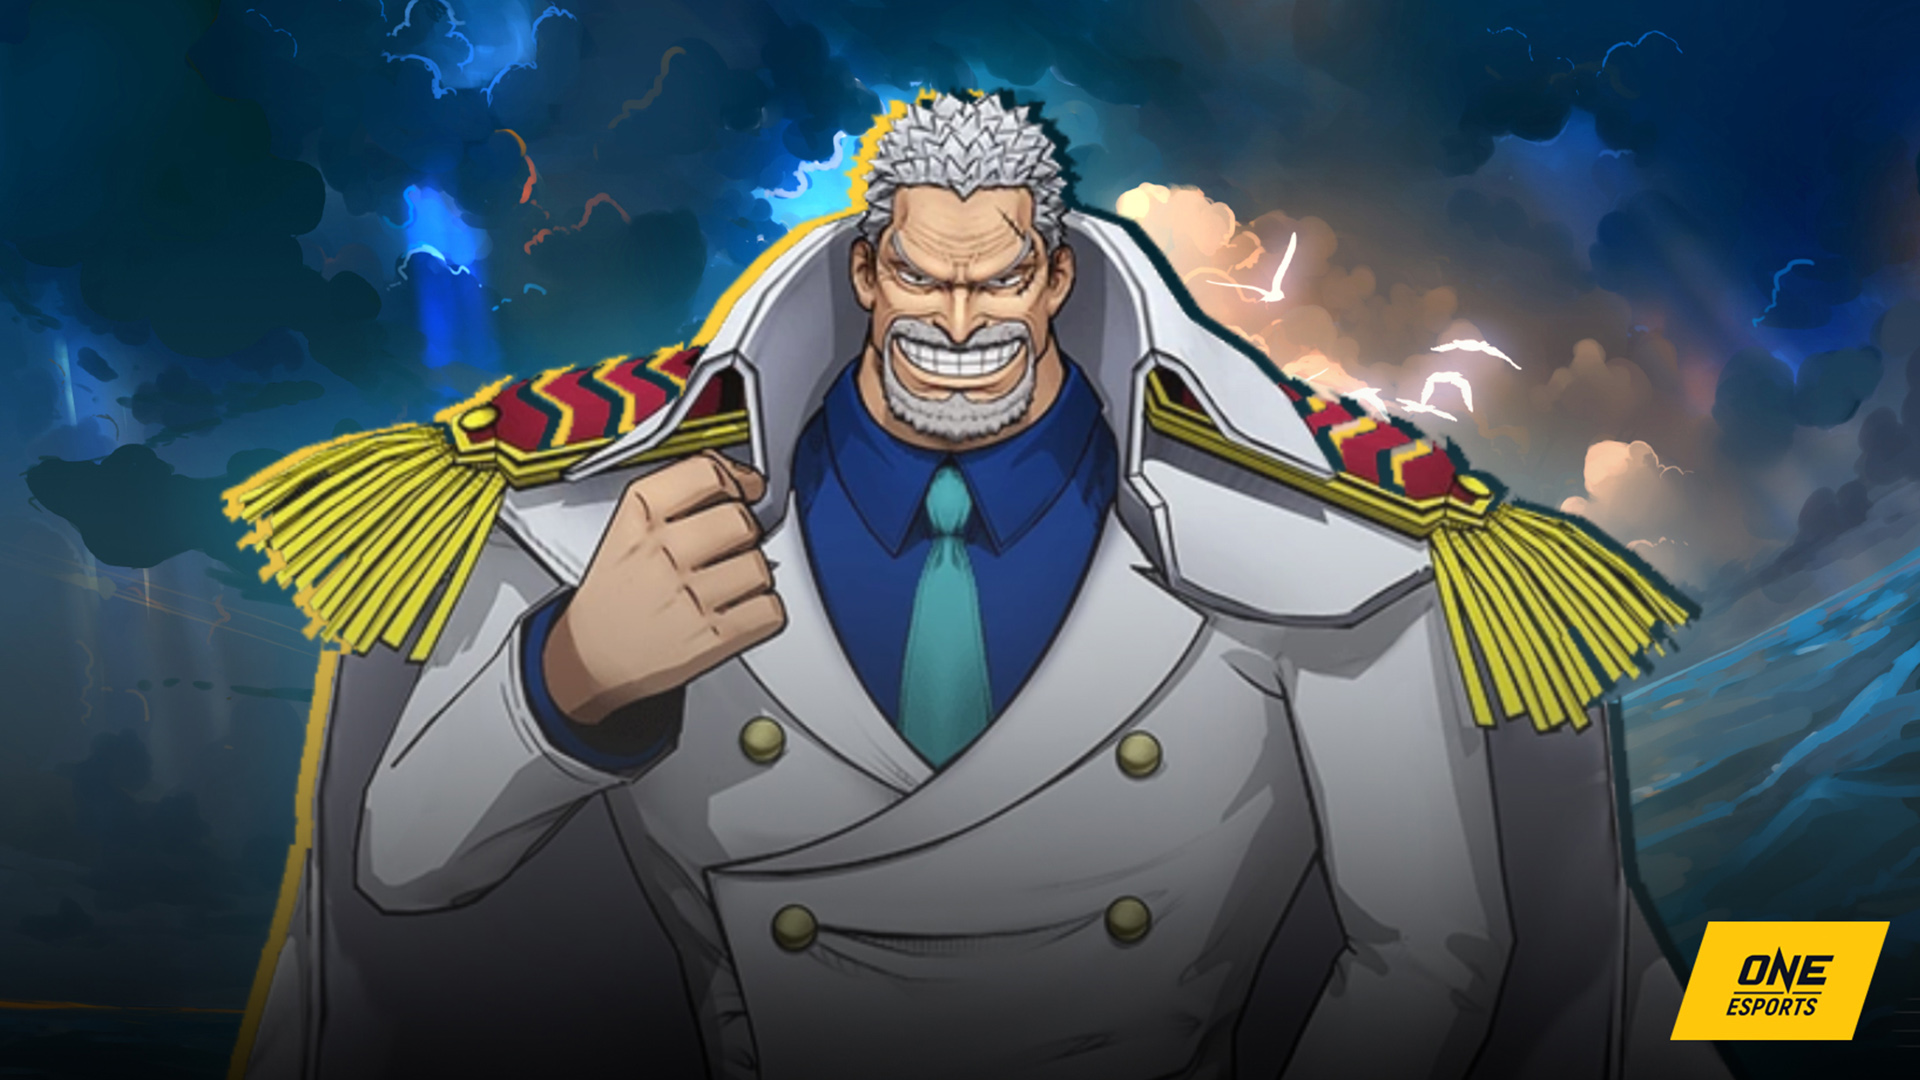 Vice admiral Garp in One Piece